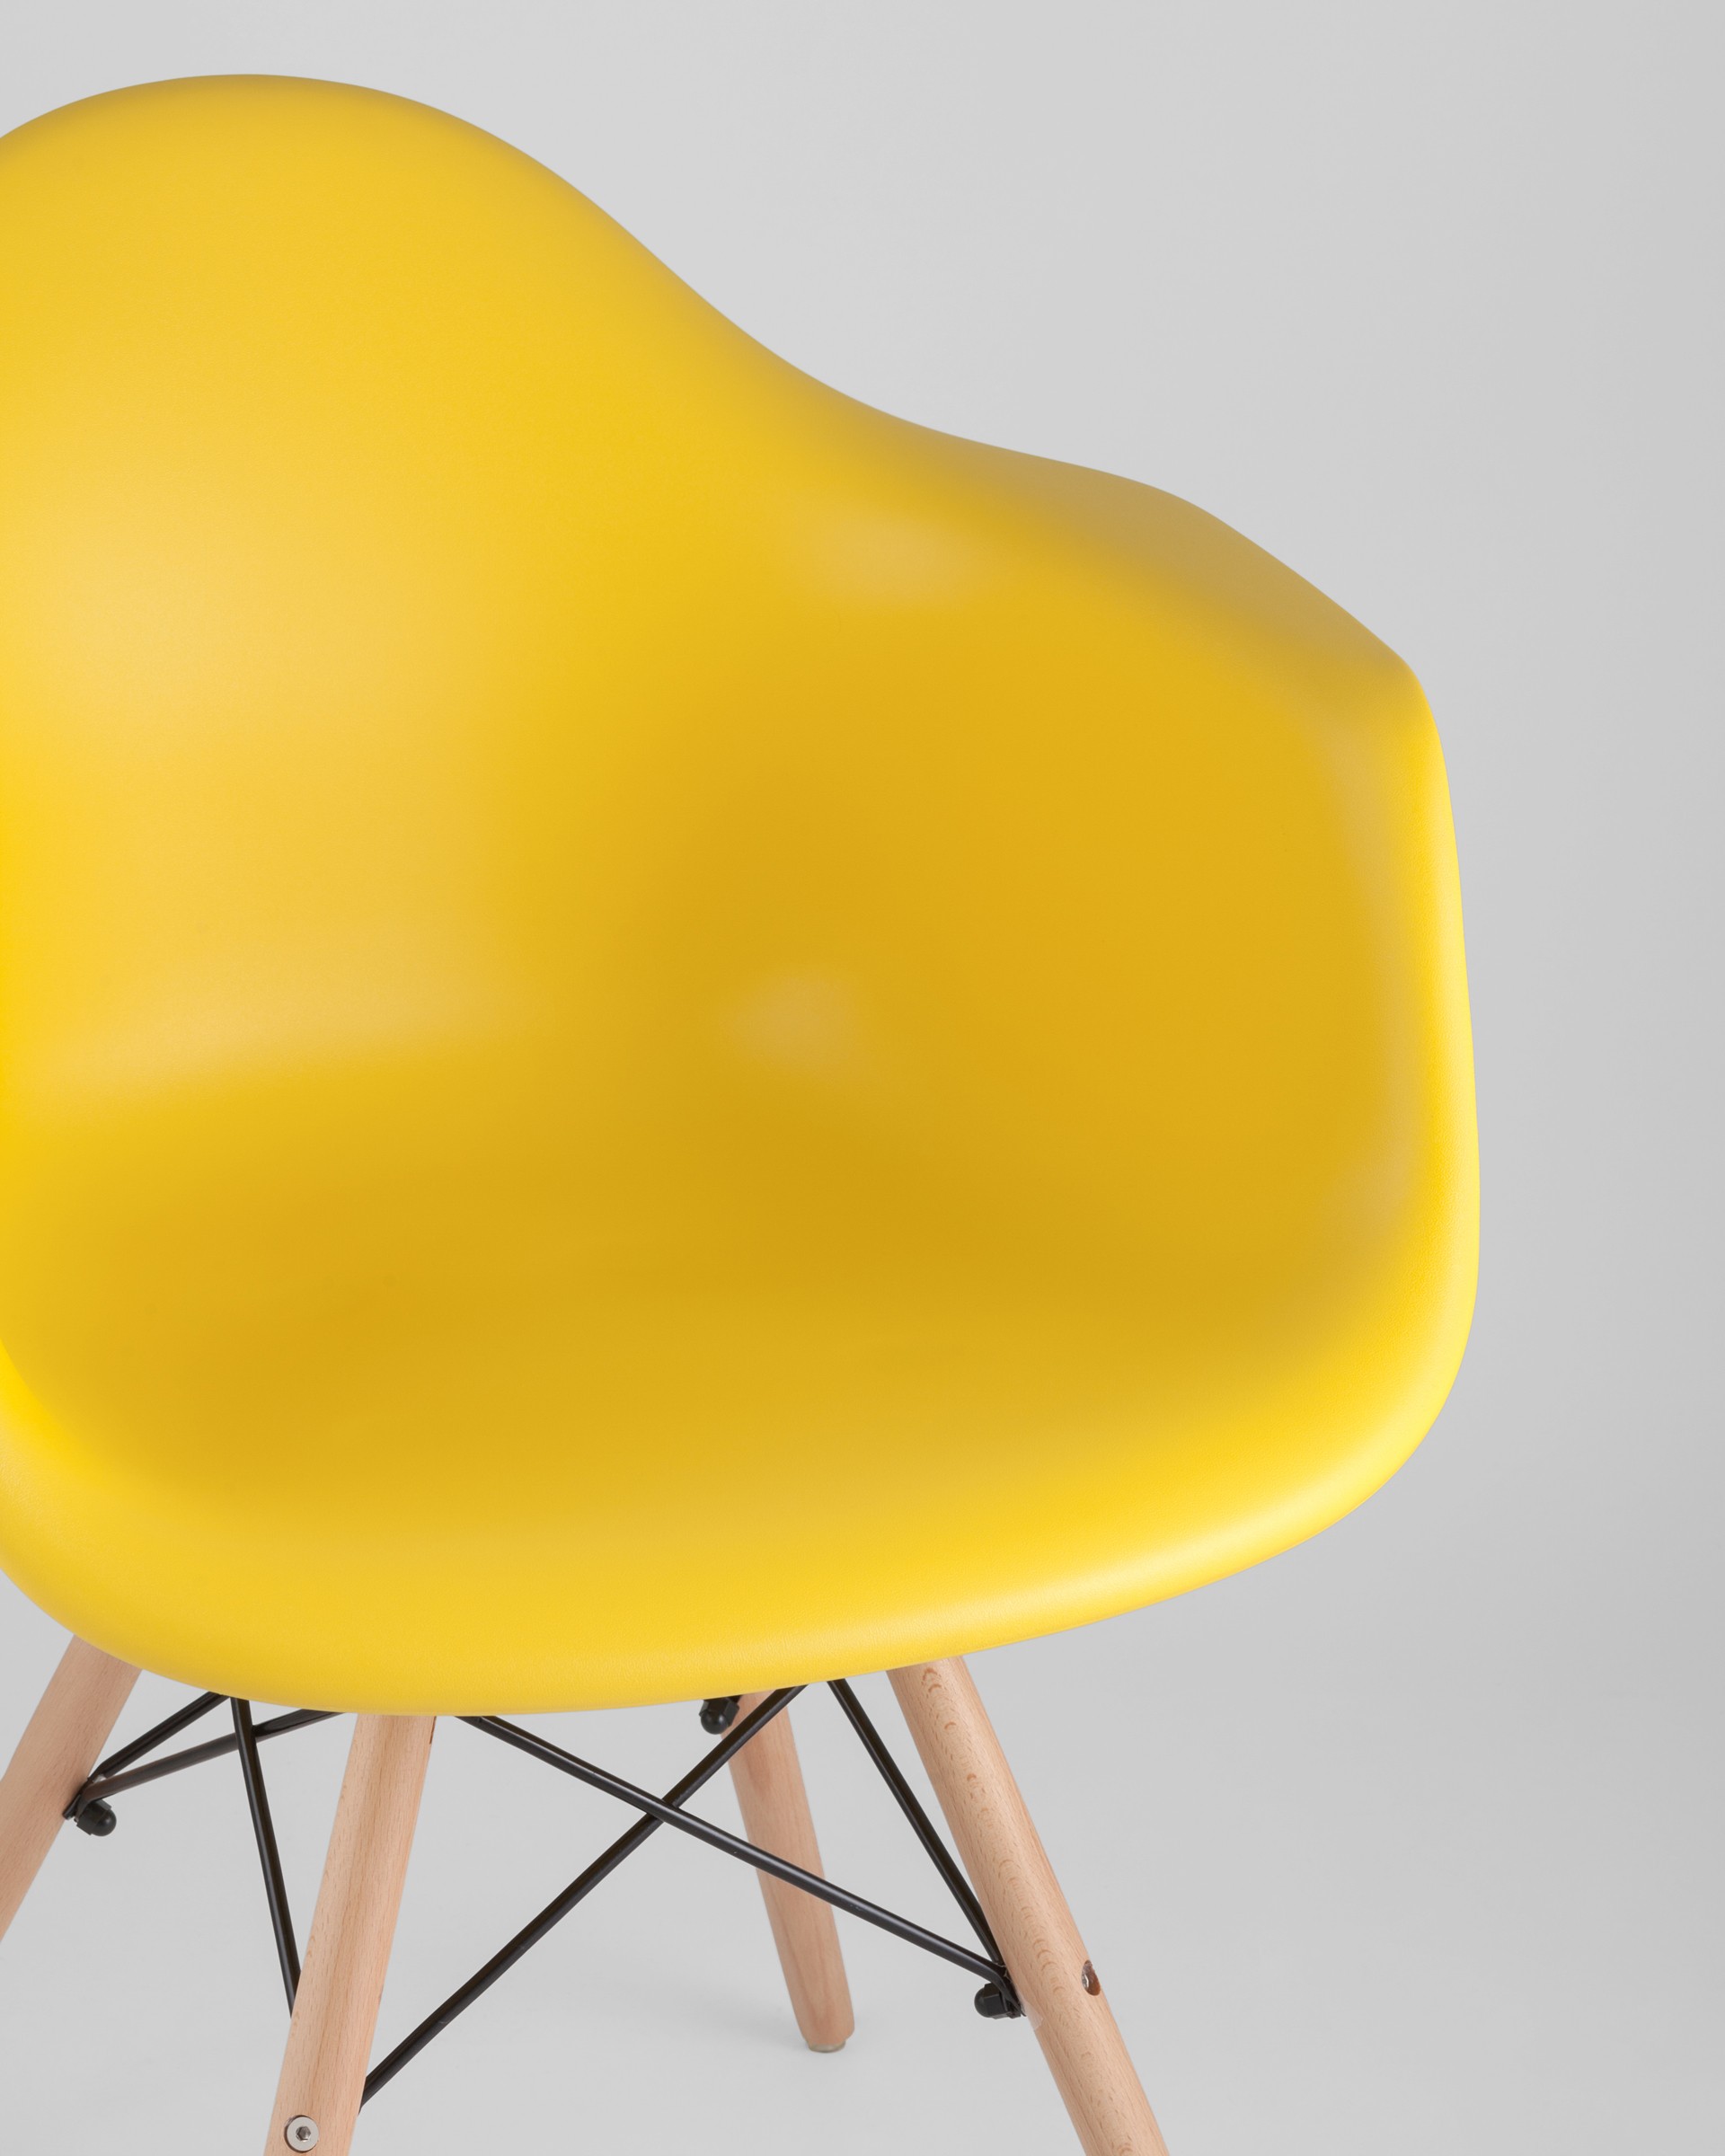 Стул DAW желтый, сиденье PP пластик, эргономичные подлокотники, основание массив бука